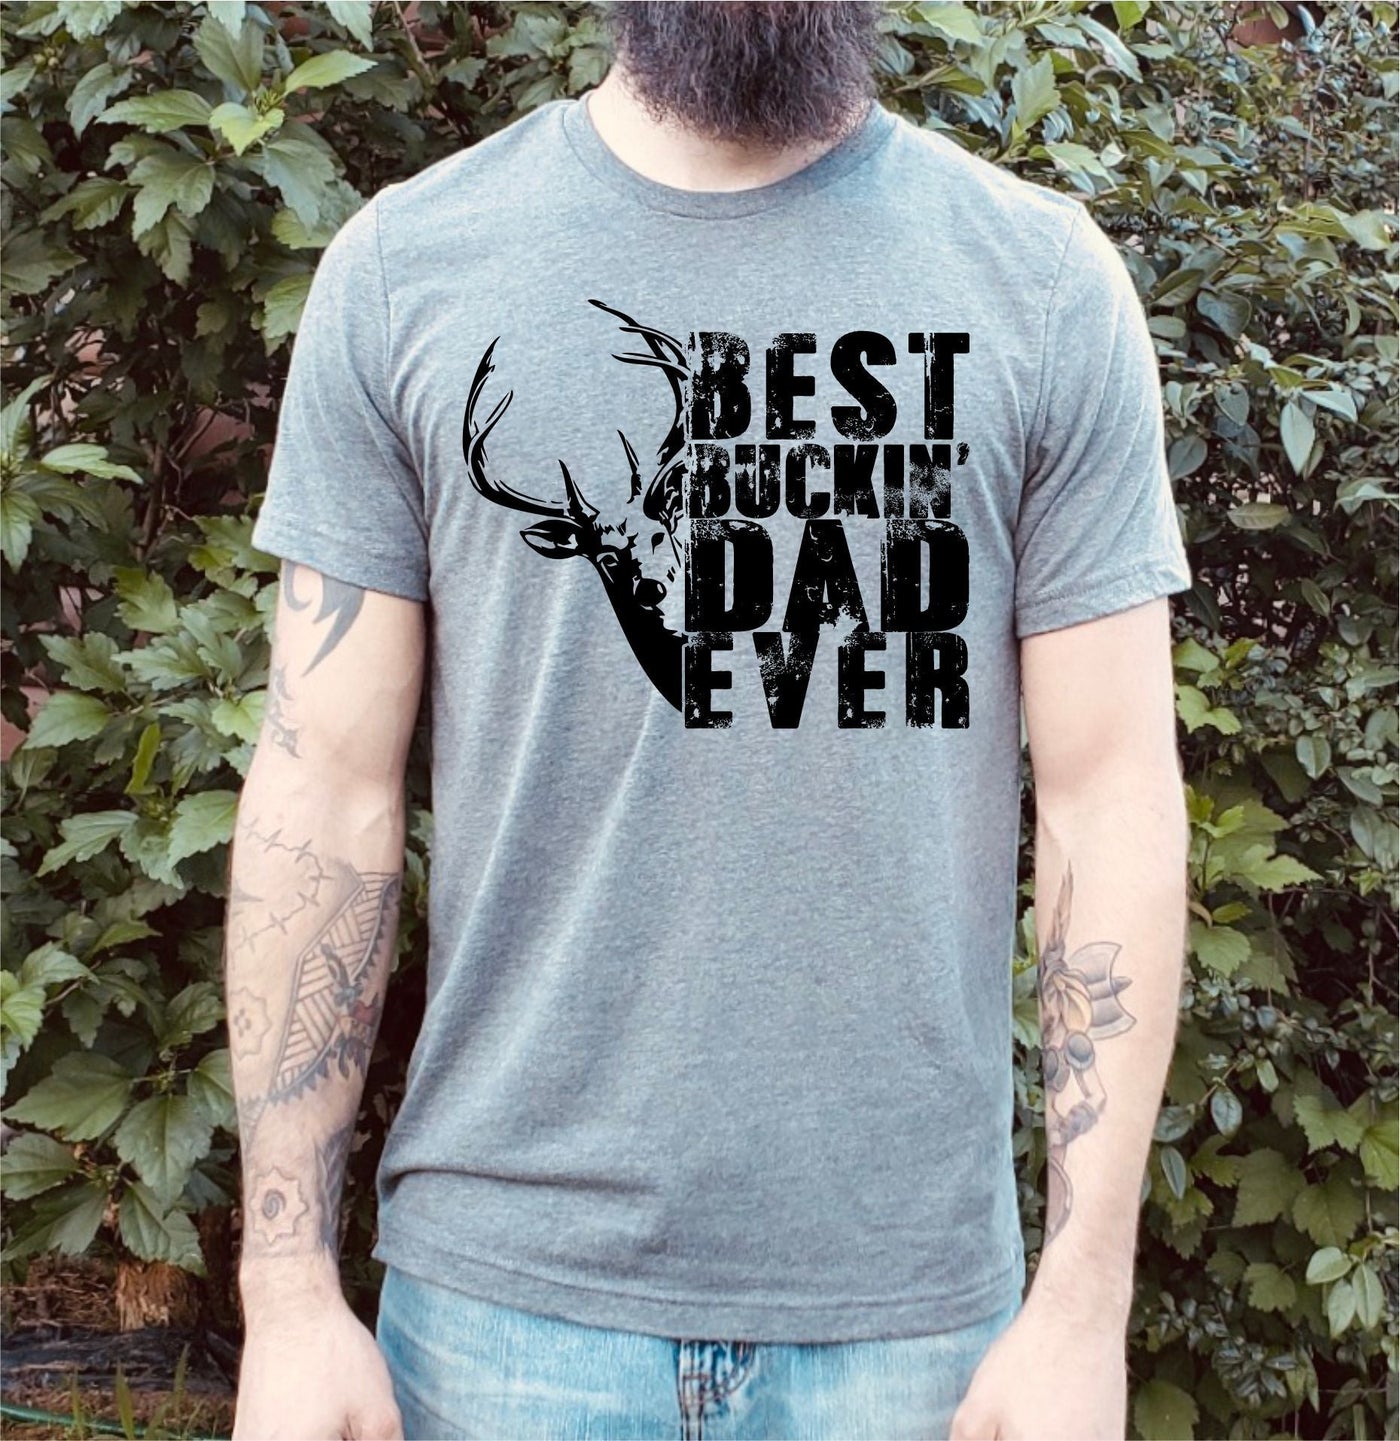 "Best Buckin' Dad Ever" T-shirt